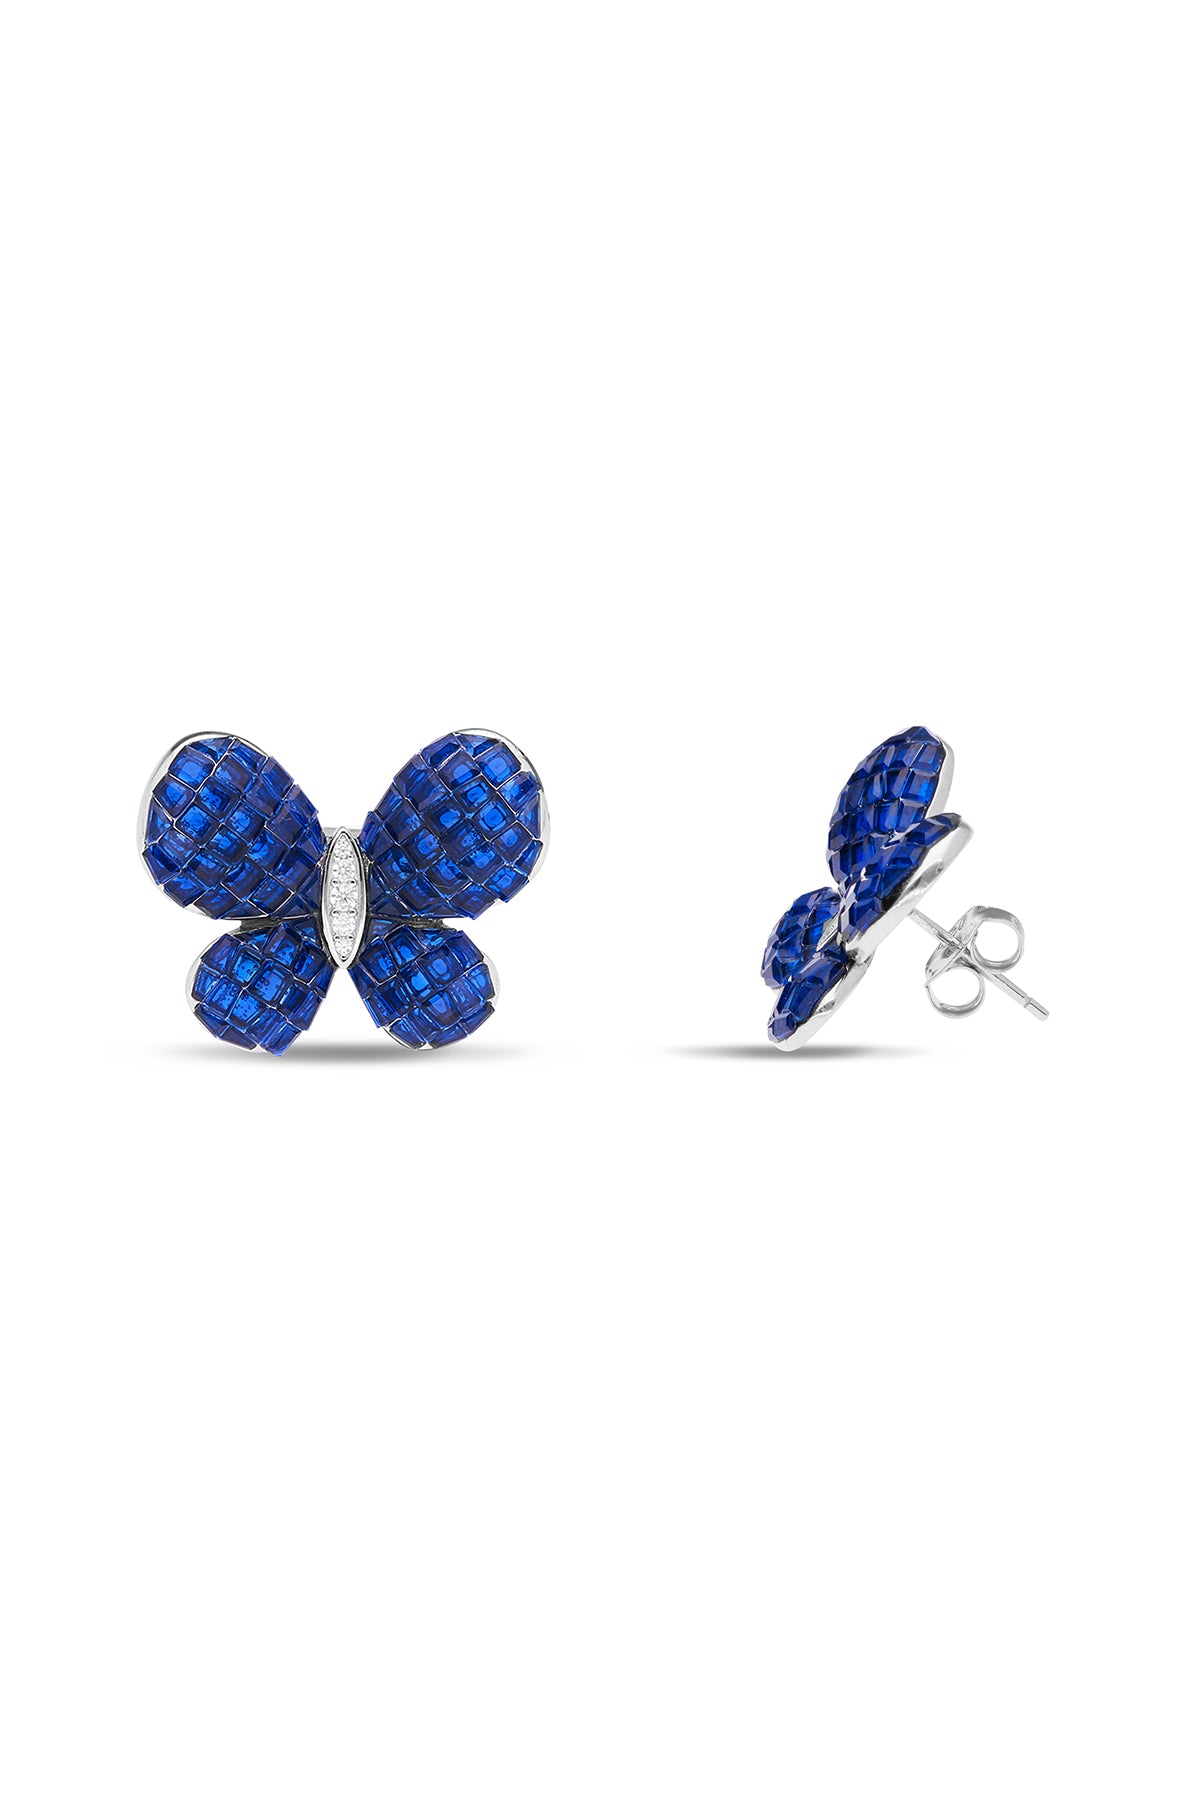 Fluttering Wings Blue Sapphire Earrings